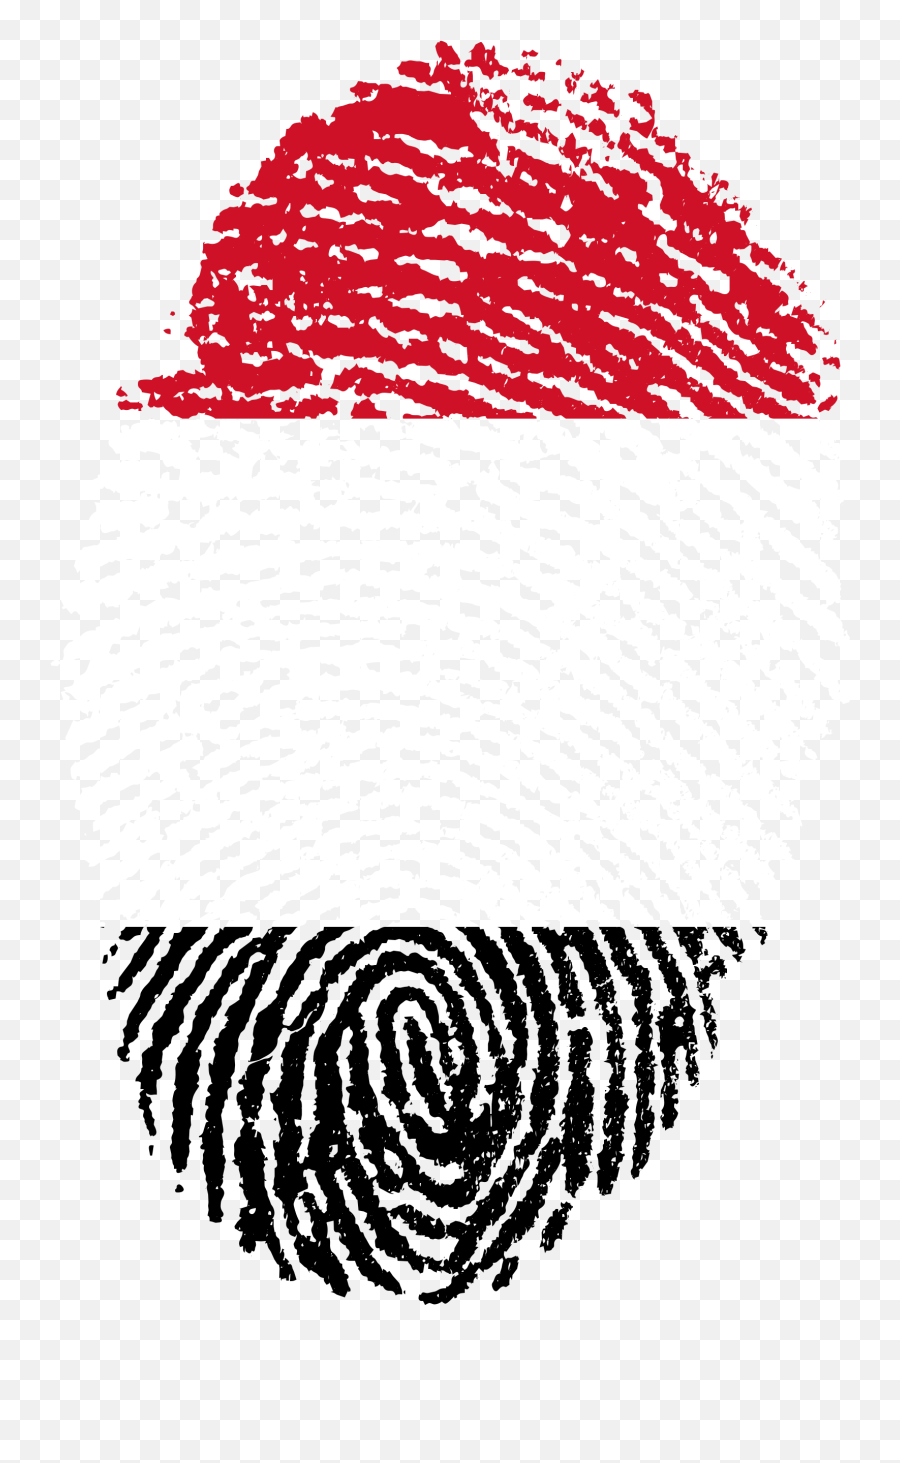 Yemen Flag Fingerprint Drawing Free Image - Challenges Of Digital India Png,Fingerprint Transparent